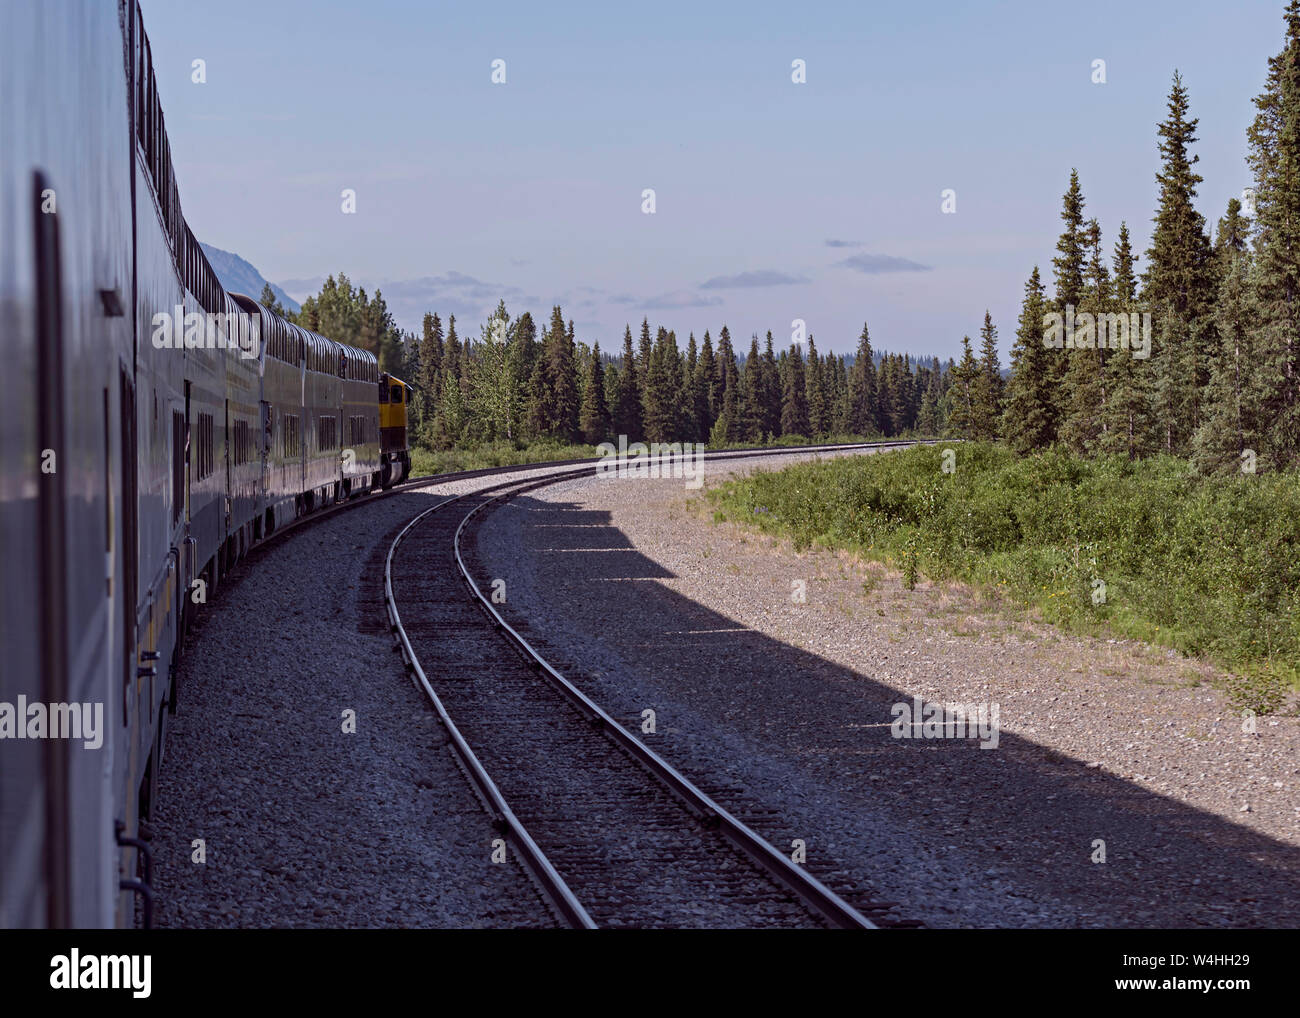 Un train touristique en laissant l'alaska denali est dirigé vers le sud de la station de train et la voie ferrée qui traverse la forêt contre un ciel bleu Banque D'Images